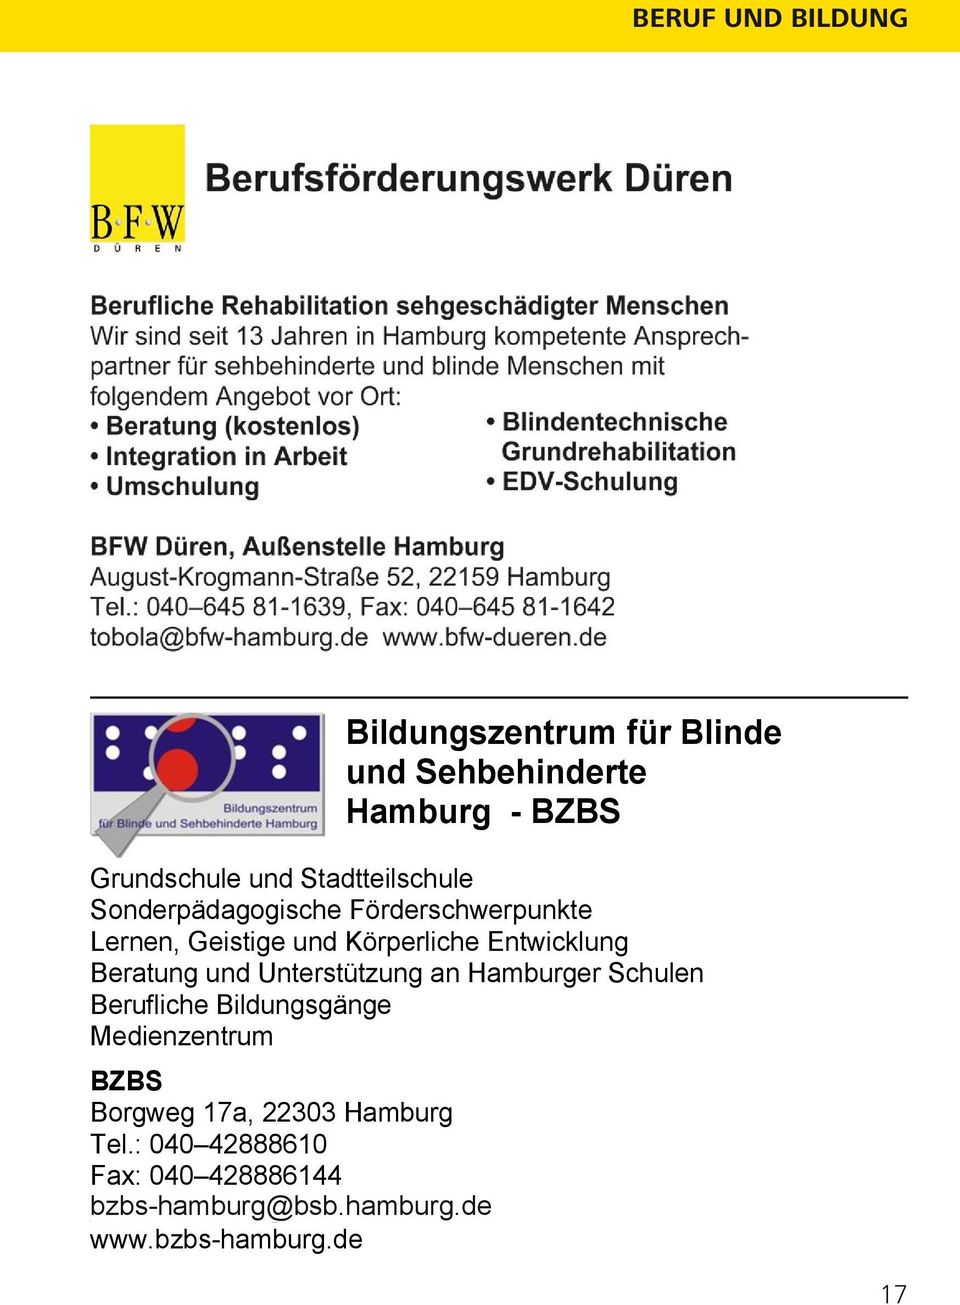 Beratung und Unterstützung an Hamburger Schulen Berufliche Bildungsgänge Medienzentrum BZBS Borgweg